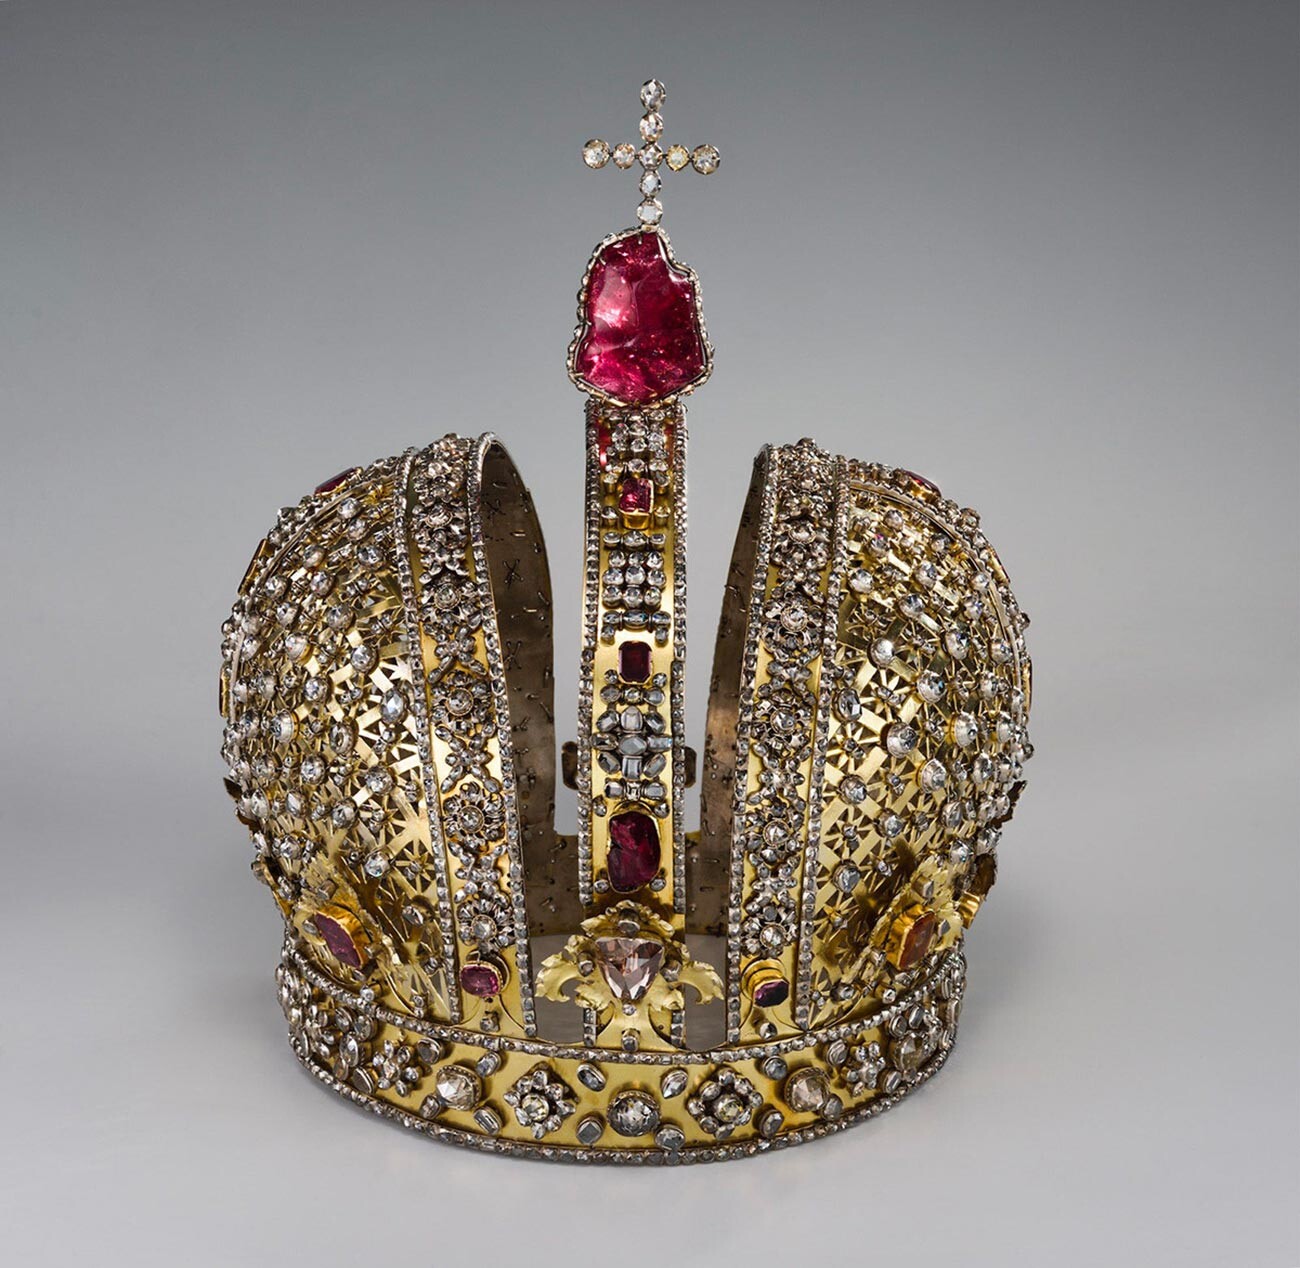 Корона Анны Иоанновны из коллекции Музеев Московского Кремля